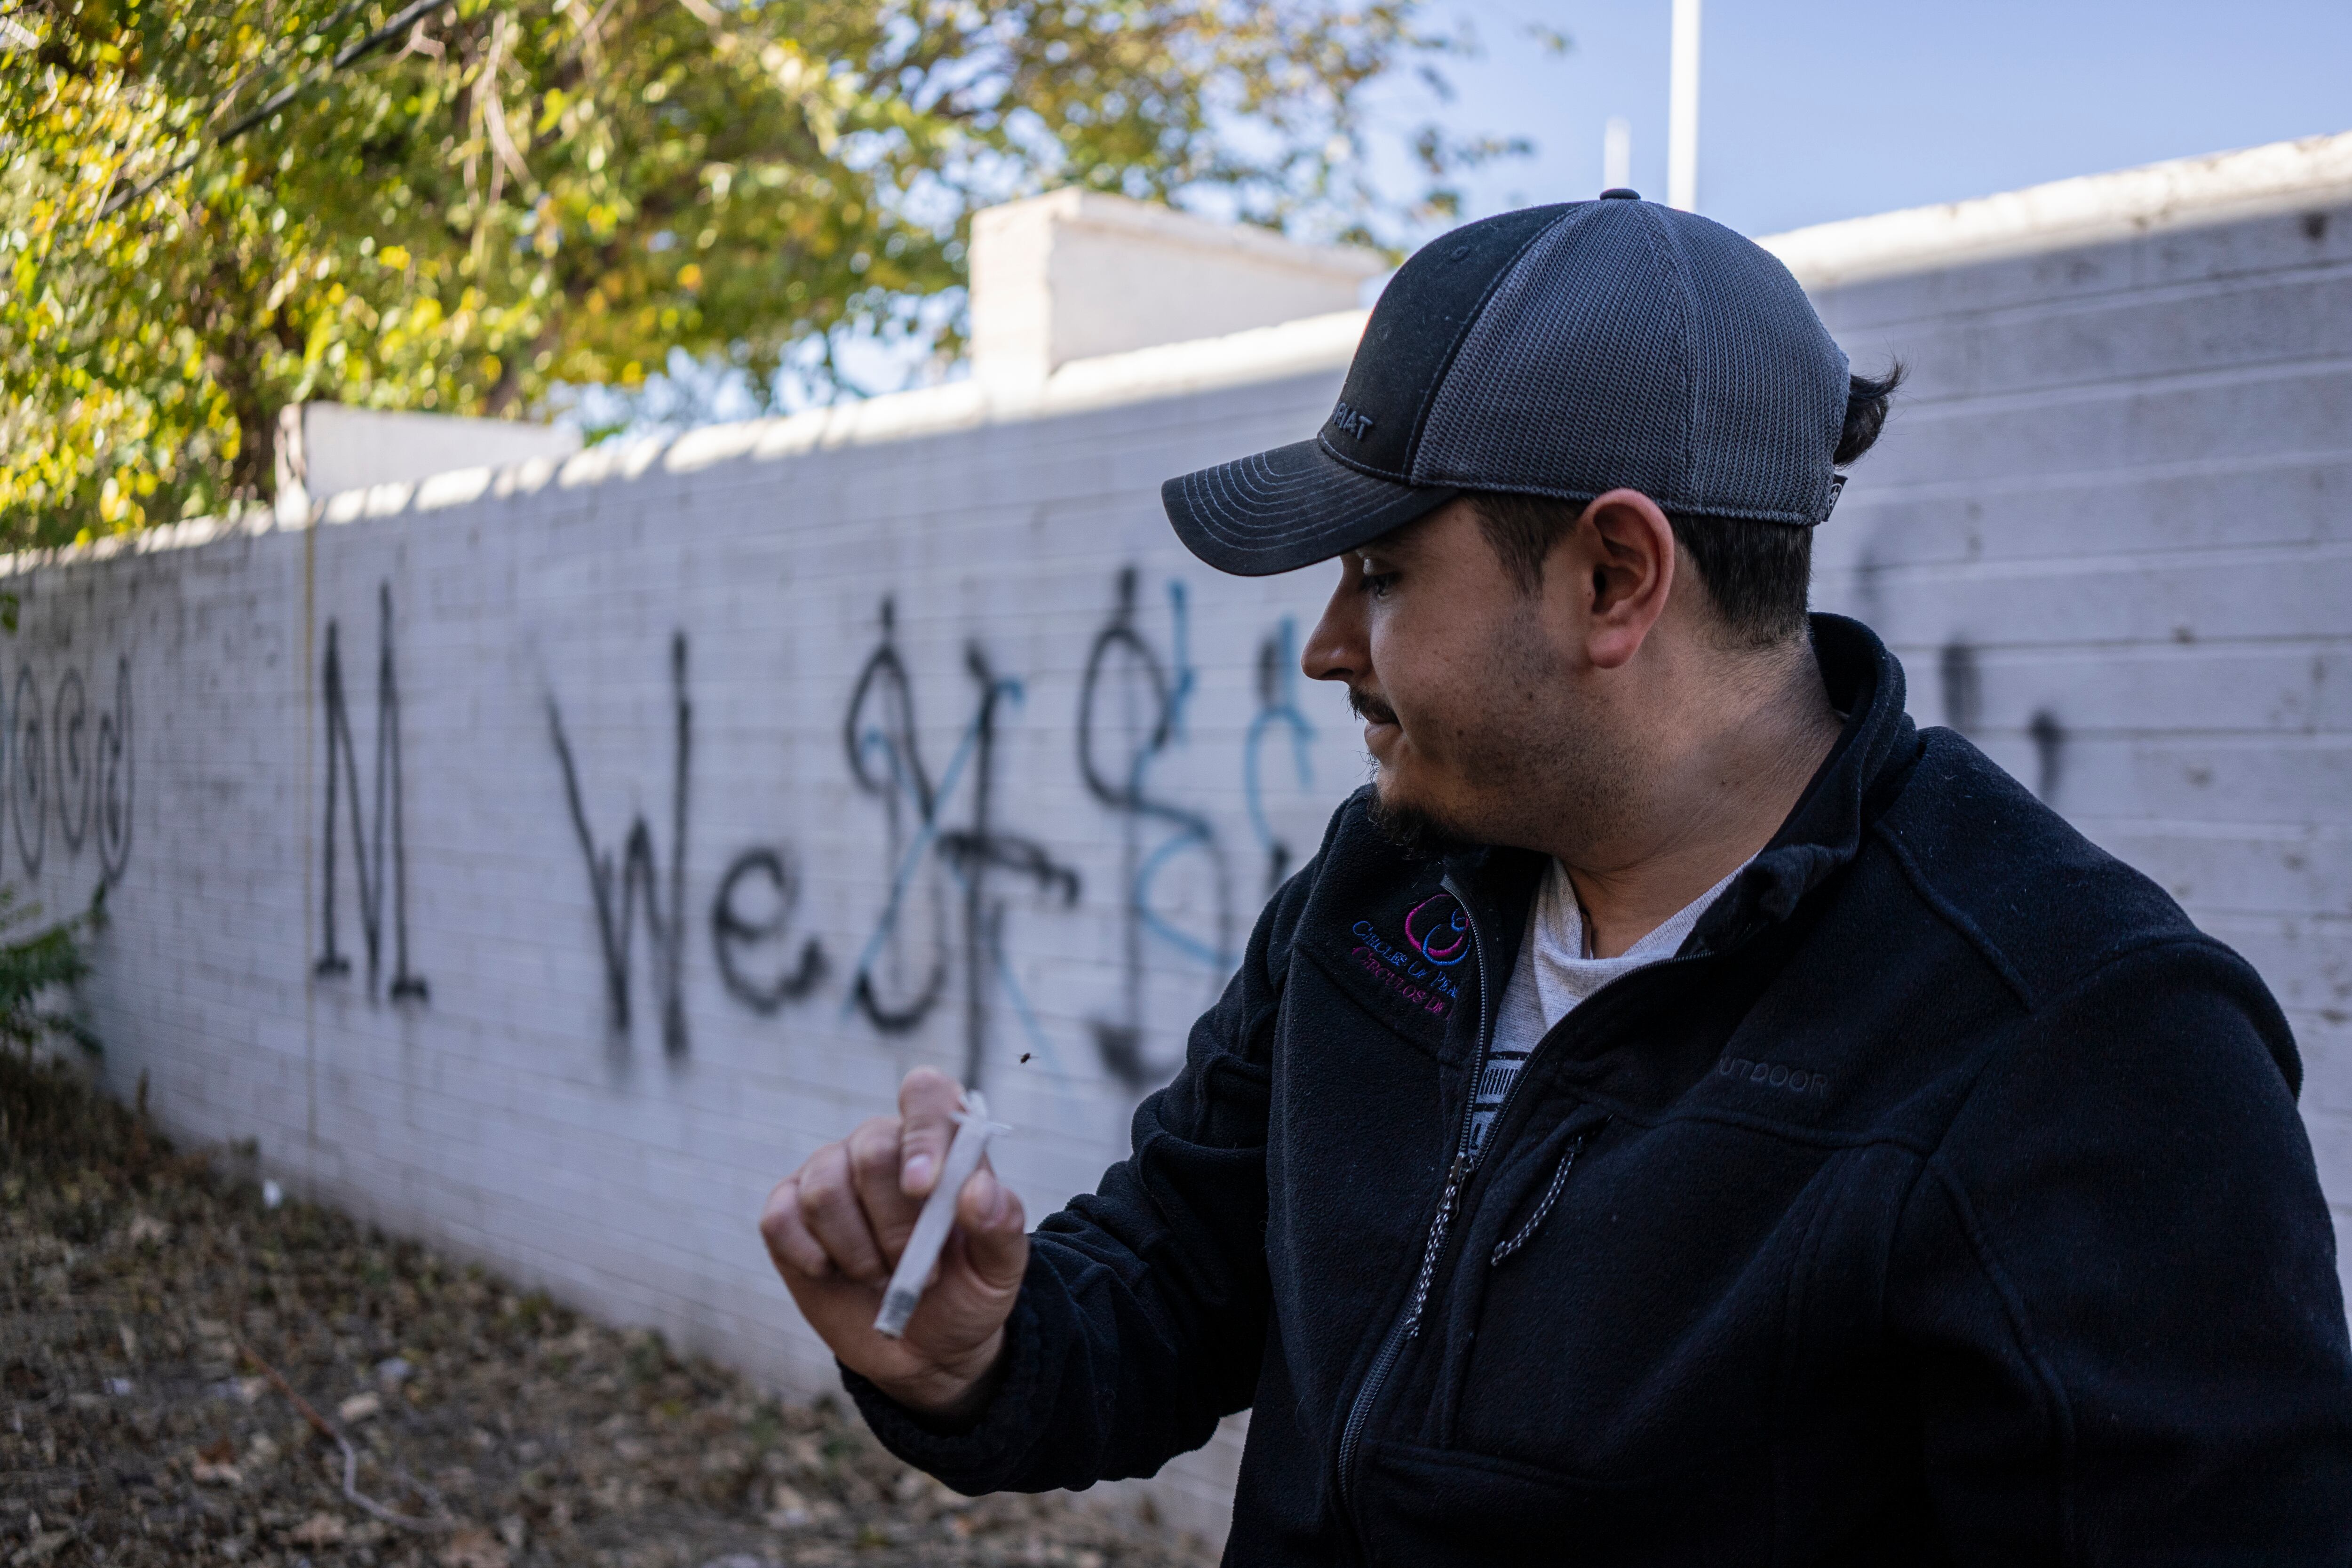 Un trabajador de una ONG encuentra una jeringa usada mientras limpia residuos dejados atrás por adictos, en Nogales (Estado de Arizona), en diciembre.